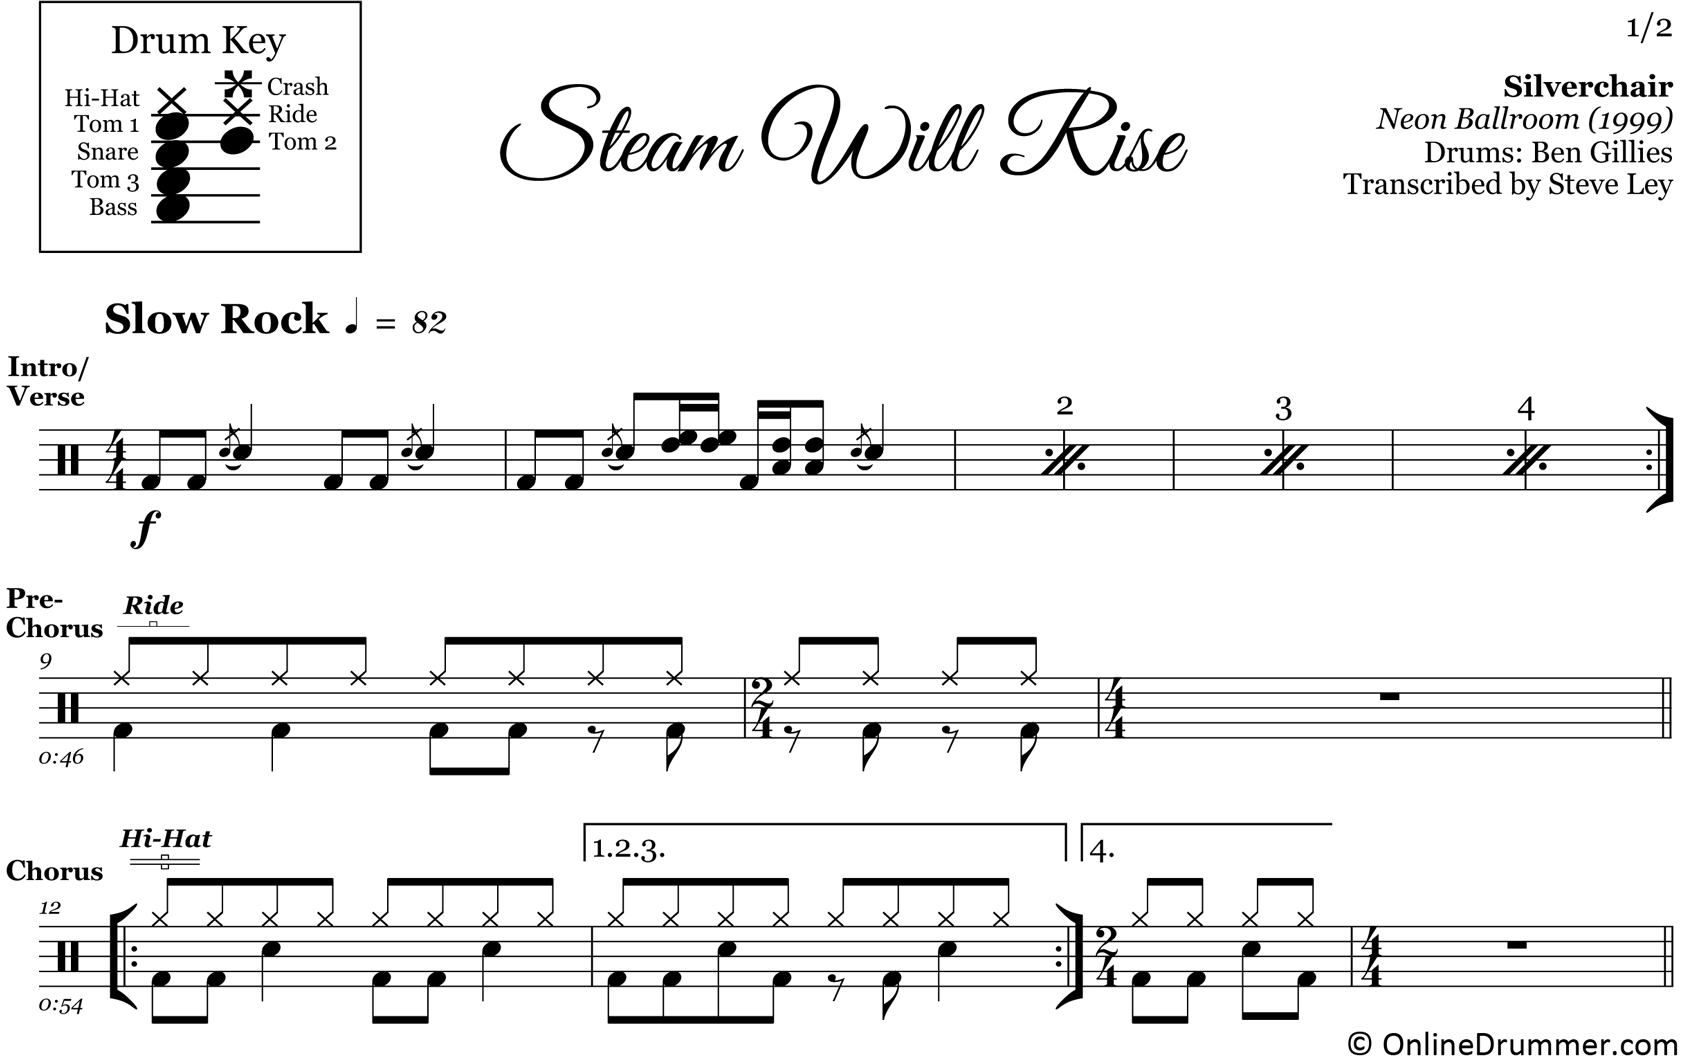 Steam Will Rise - Silverchair - Drum Sheet Music